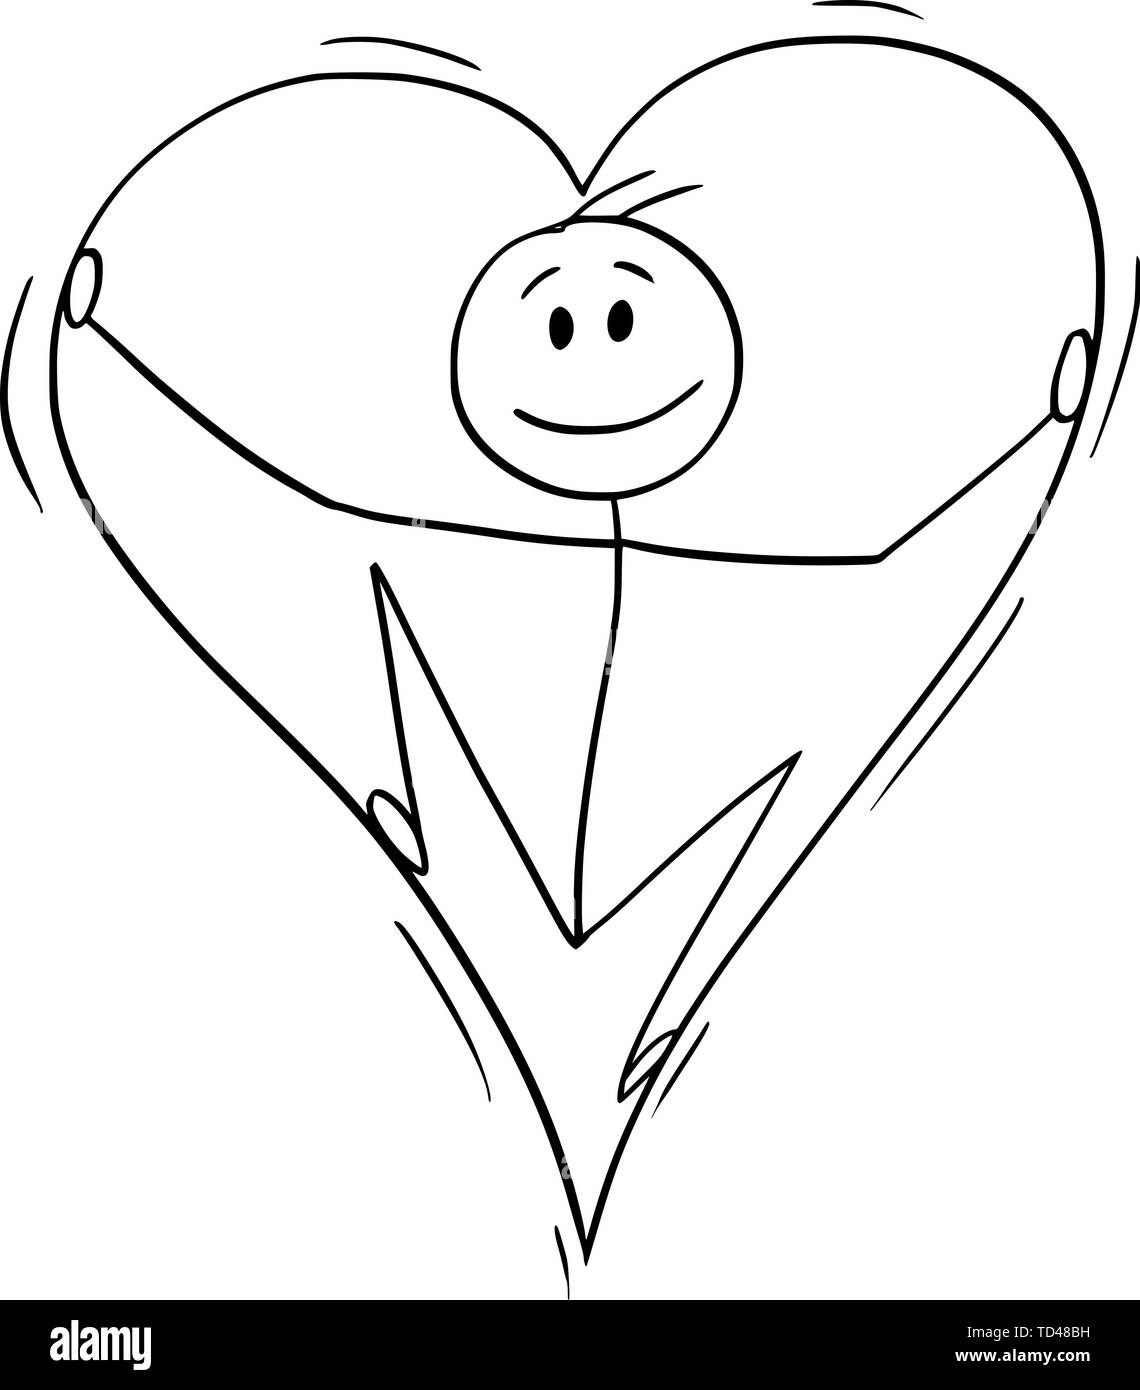 Vektor cartoon Strichmännchen Zeichnen konzeptionelle Darstellung des Menschen in der Liebe im Inneren der großen Herzen. Stock Vektor